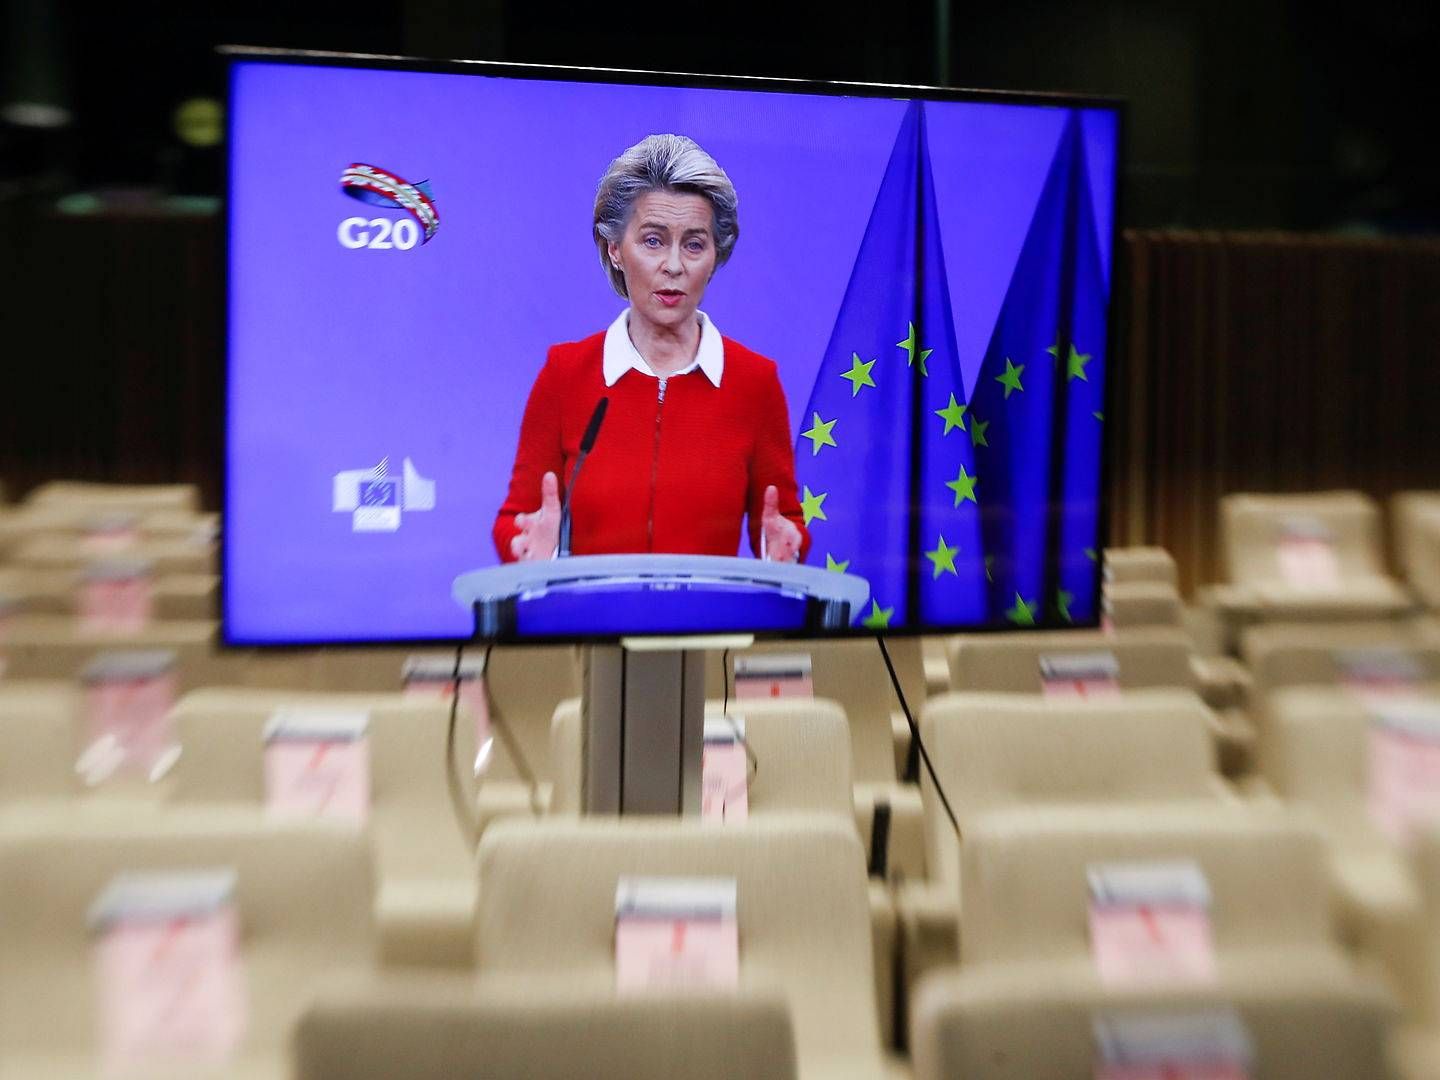 Det var under et virtuelt pressemøde fredag, som egentlig omhandlede søndages G20-topmøde, at Ursula von der Leyen luftede positive toner omkring en fremtidig aftale mellem EU og Storbritannien. | Foto: Pool/Reuters/Ritzau Scanpix